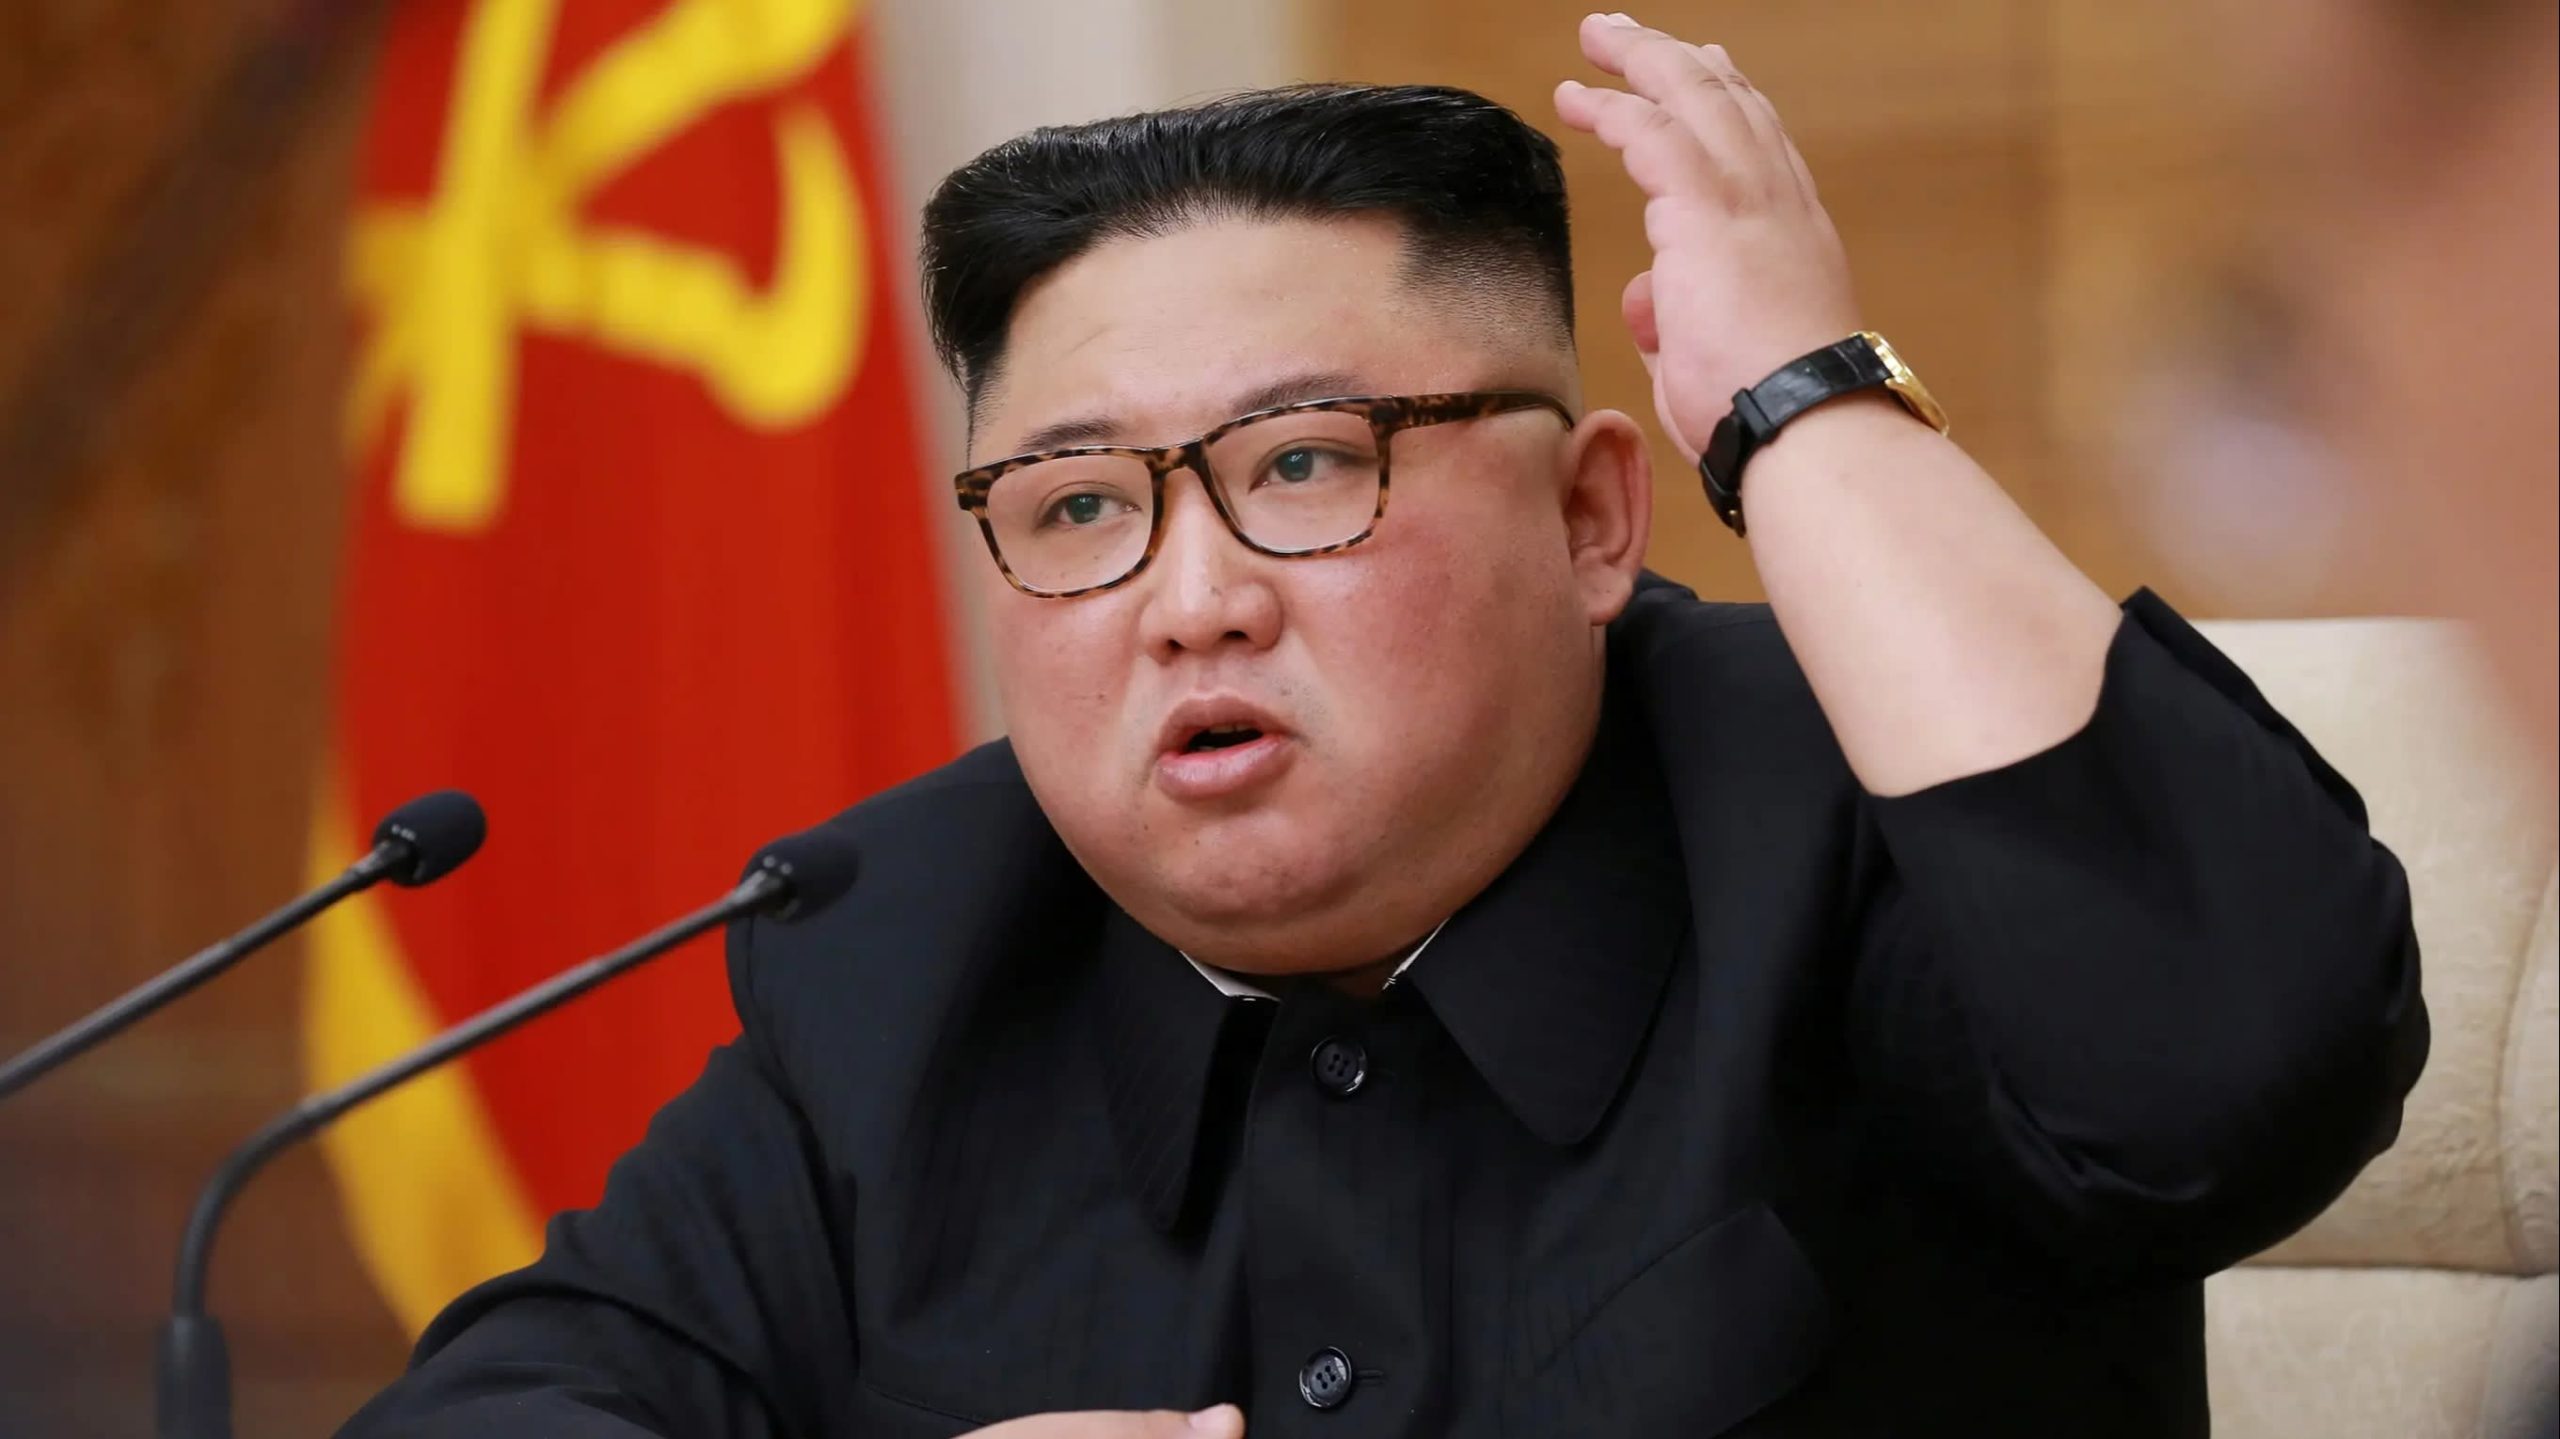 Λευκός Οίκος: «Οι ΗΠΑ θα συνεργαστούν με τους εταίρους τους για τον περιορισμό της Βόρειας Κορέας»